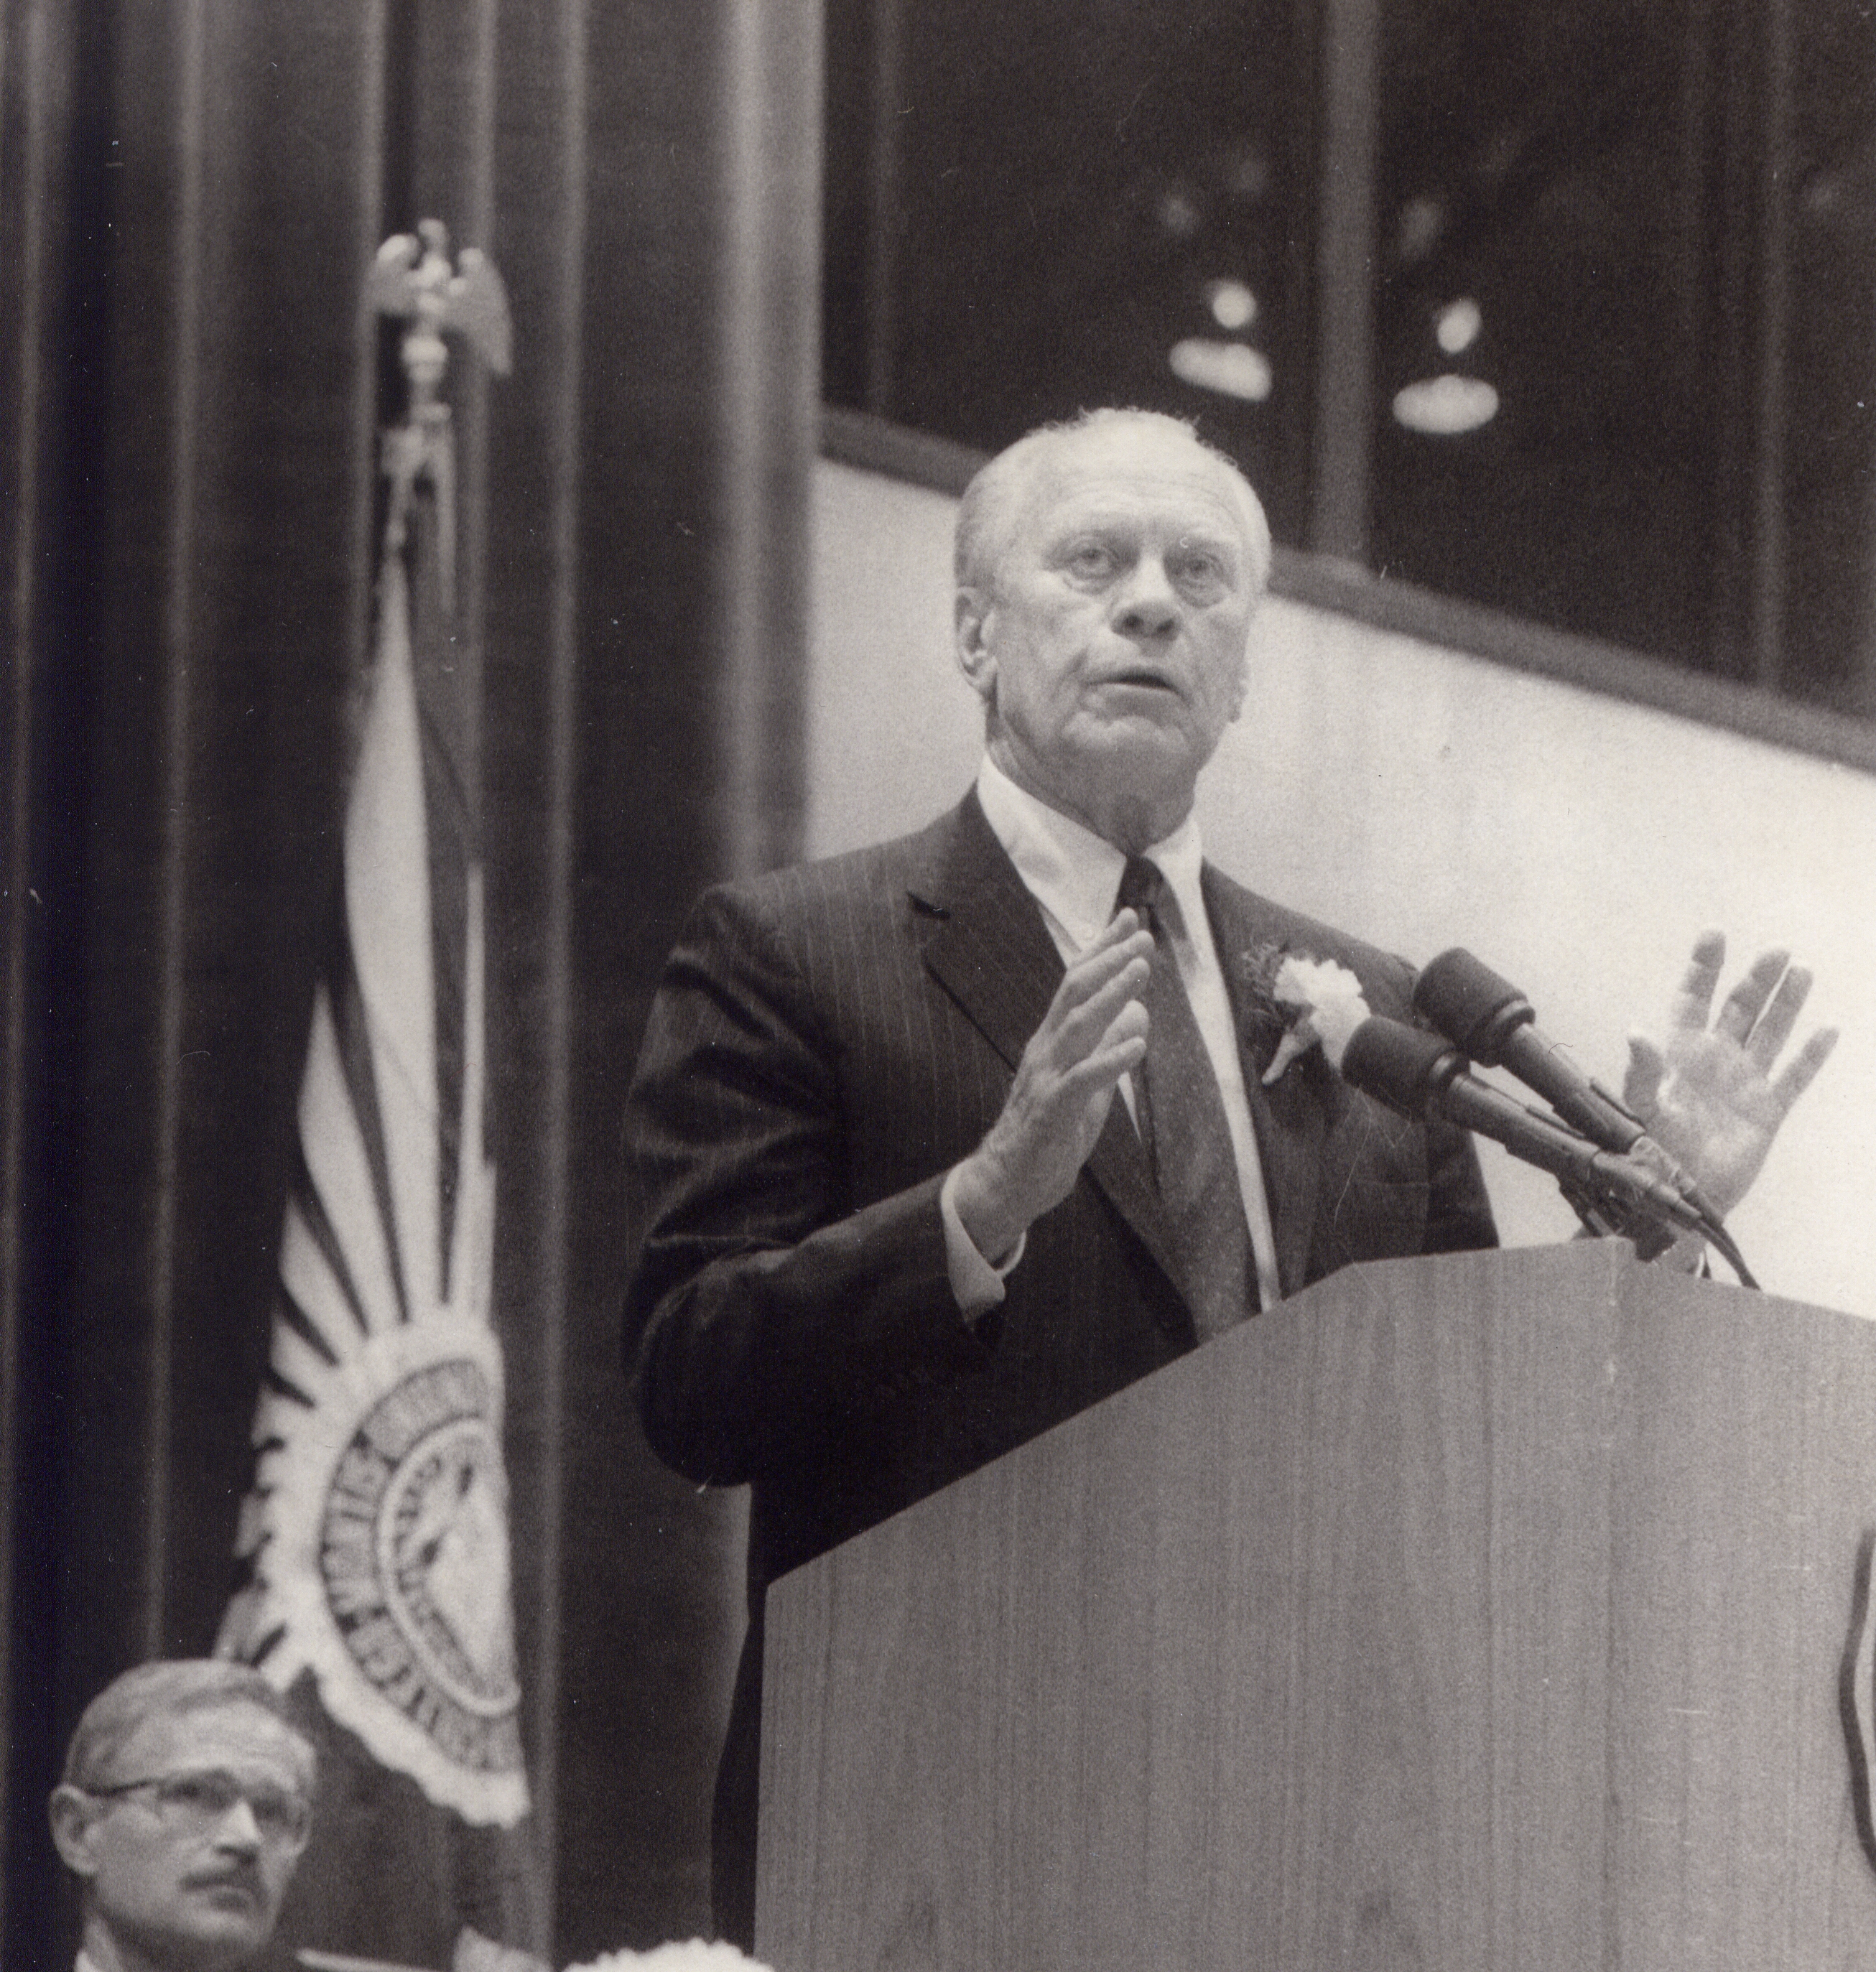 Speaker Gerald Ford